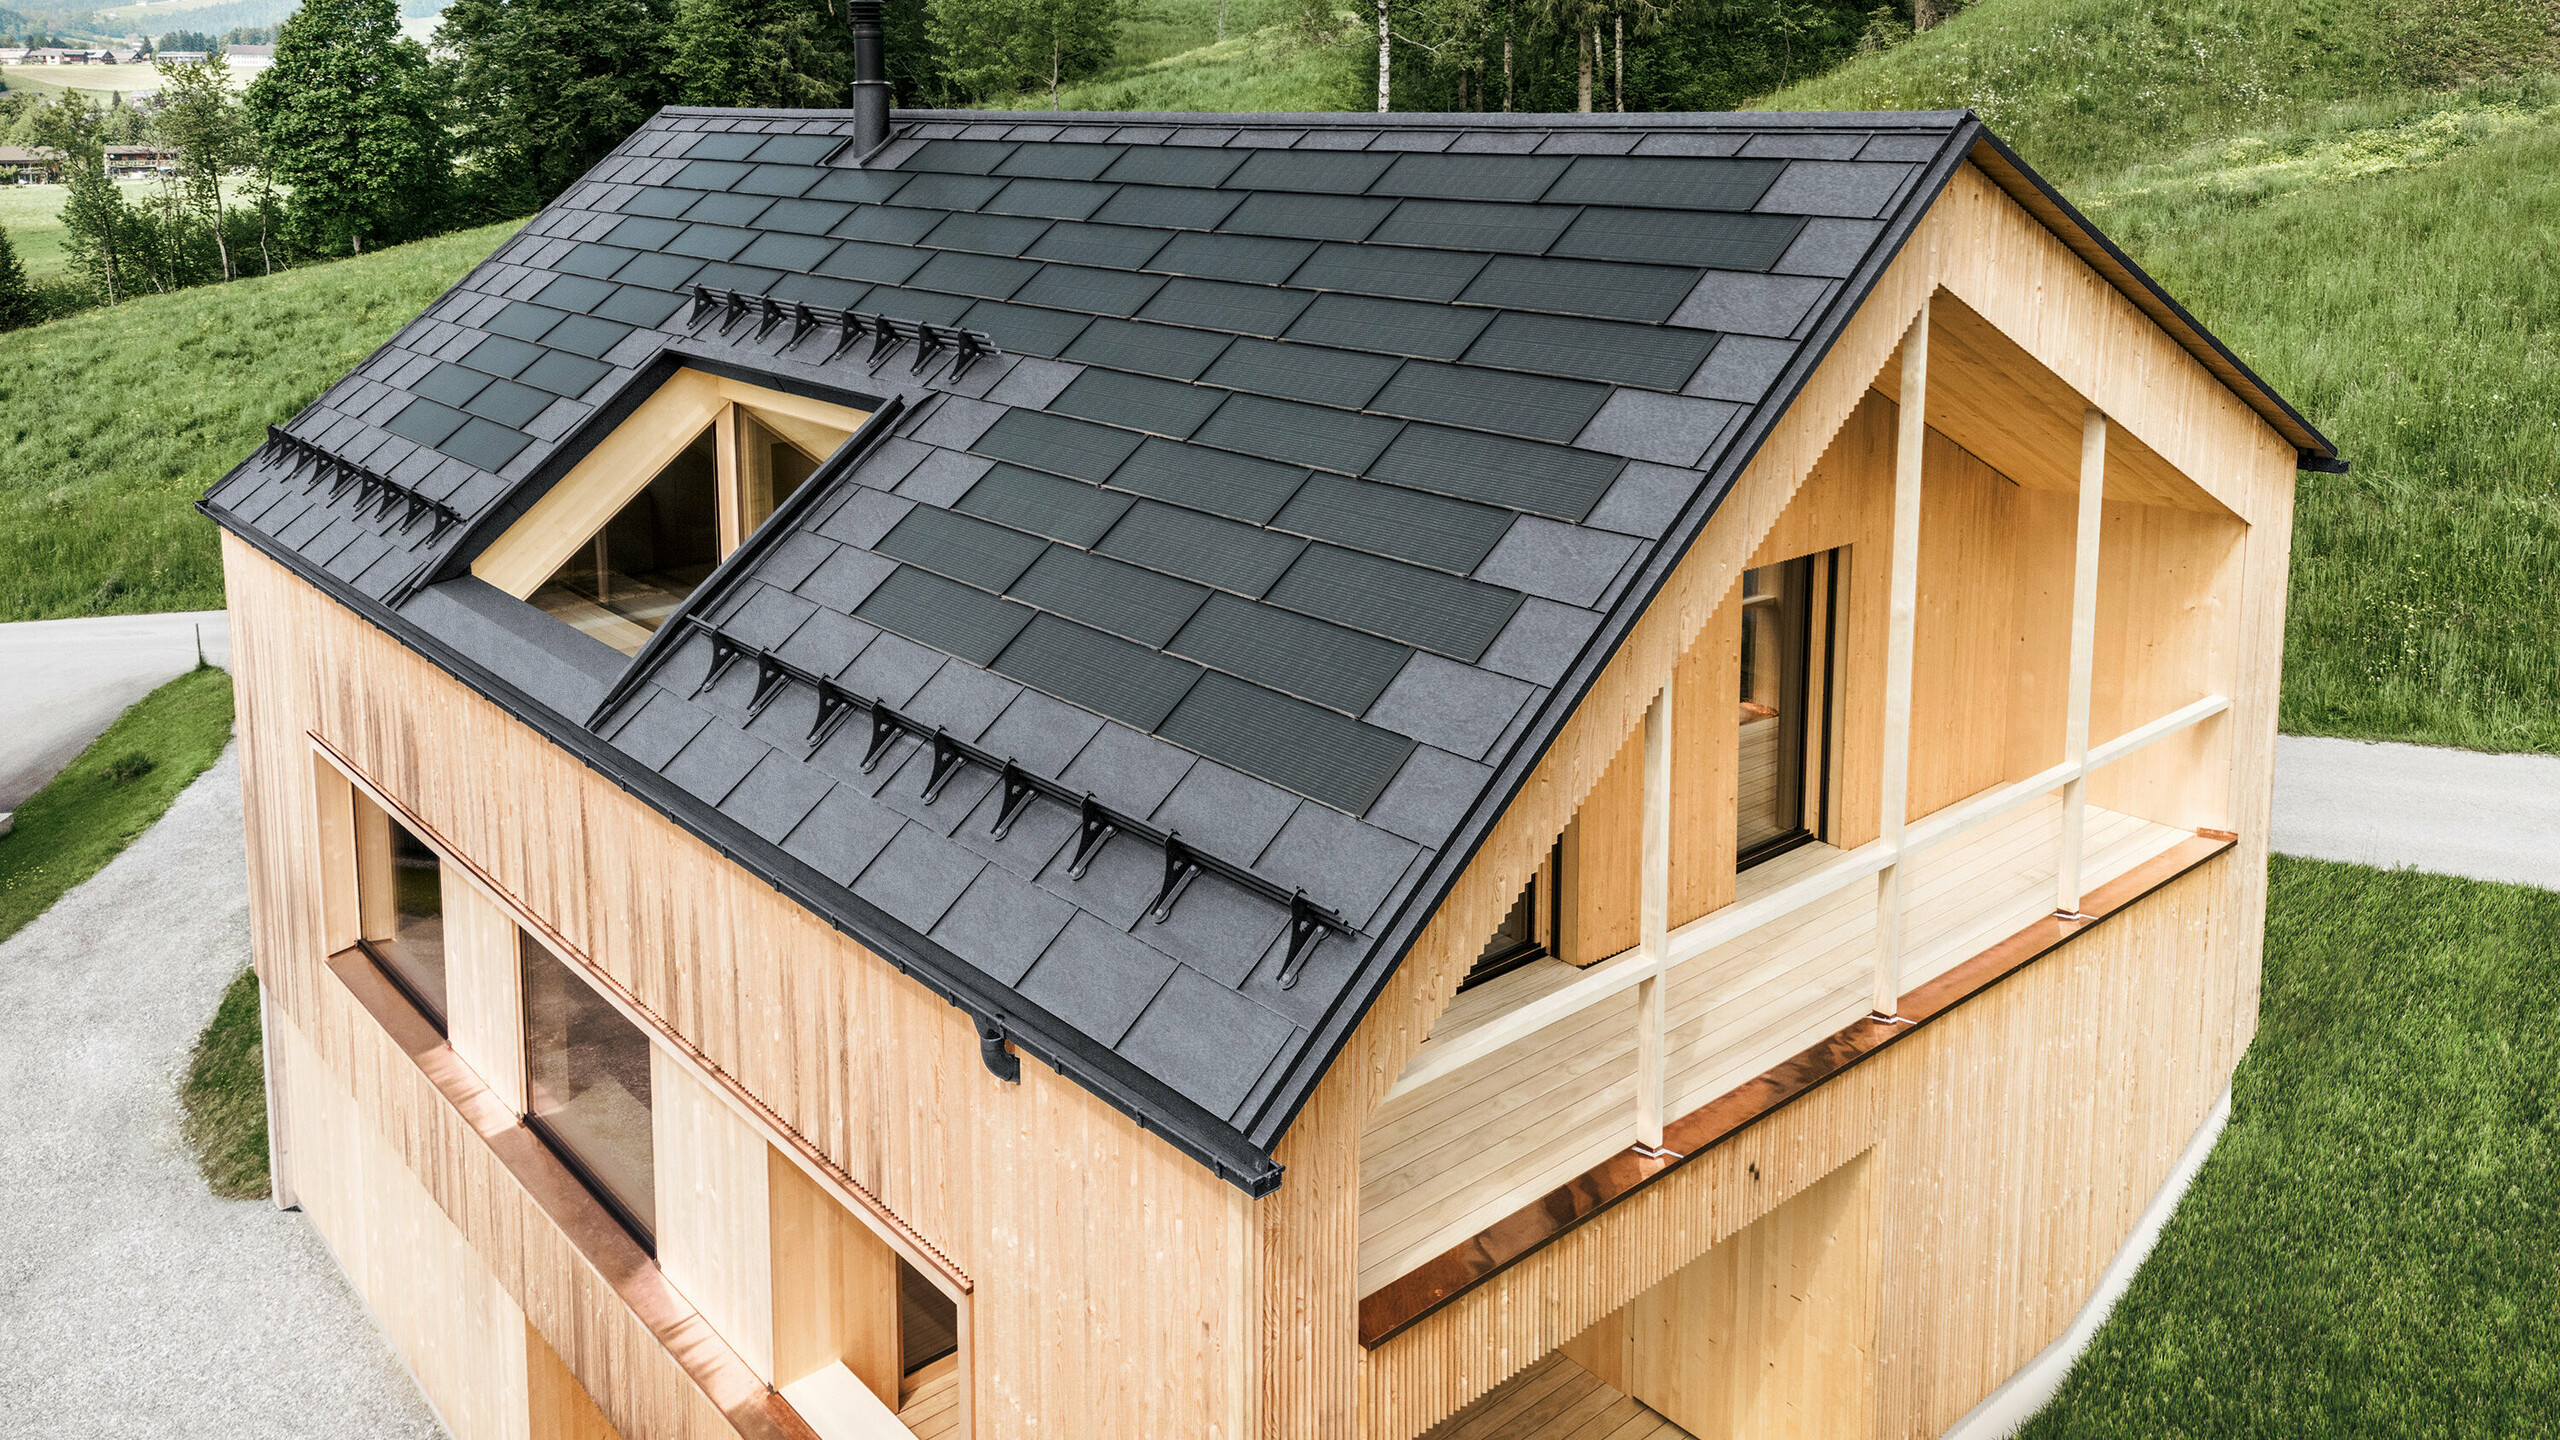 Maison individuelle dans la localité autrichienne d'Egg avec le panneau solaire de toiture PREFA et le panneau de toiture R.16 en gris pierre, combinés à une façade en bois